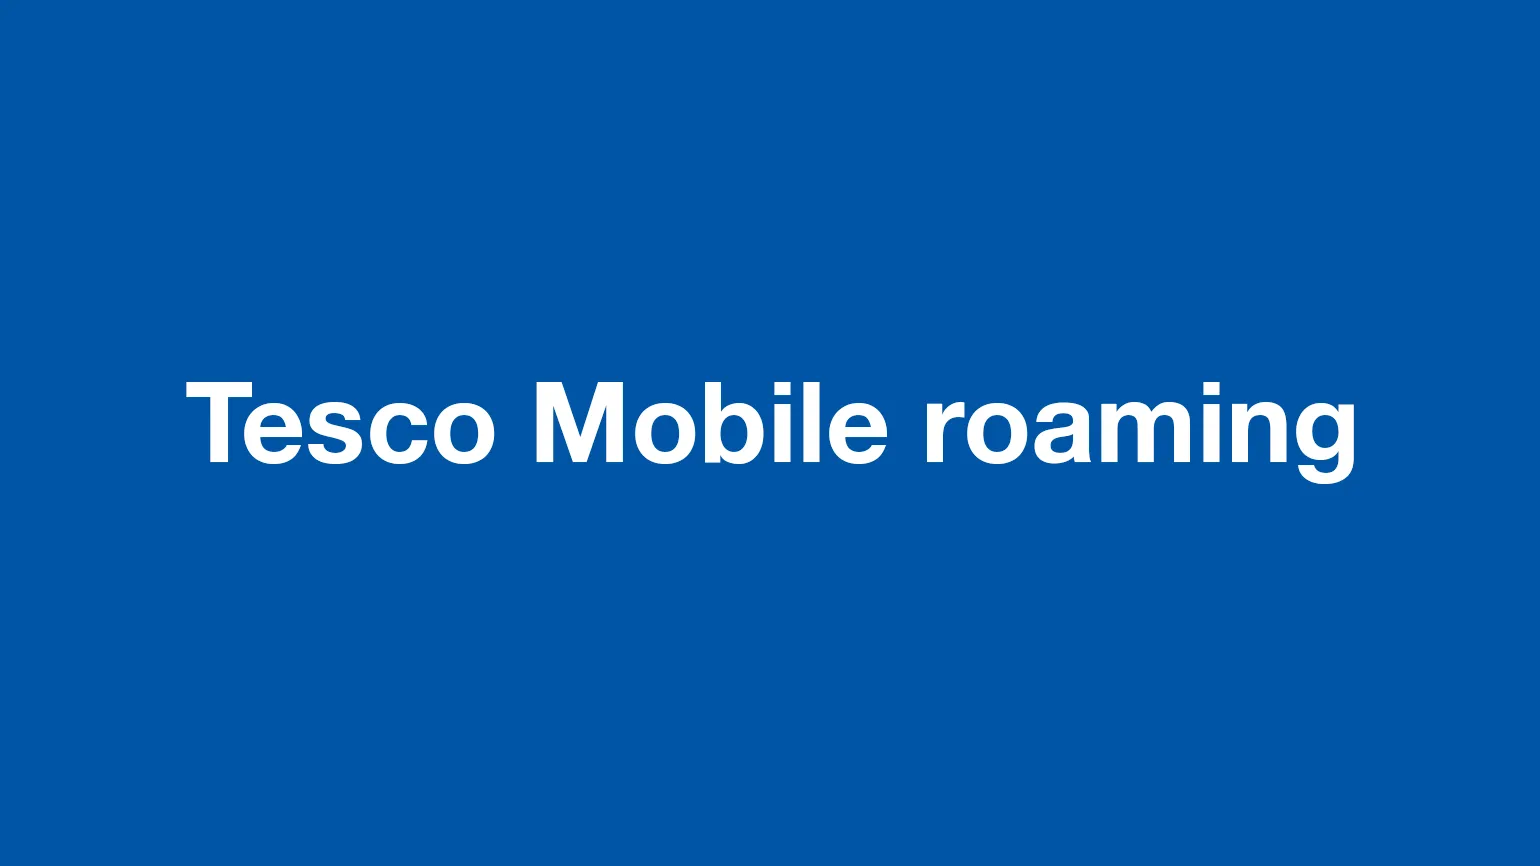 Tesco Mobile roaming - International roaming with Tesco Mobile explained